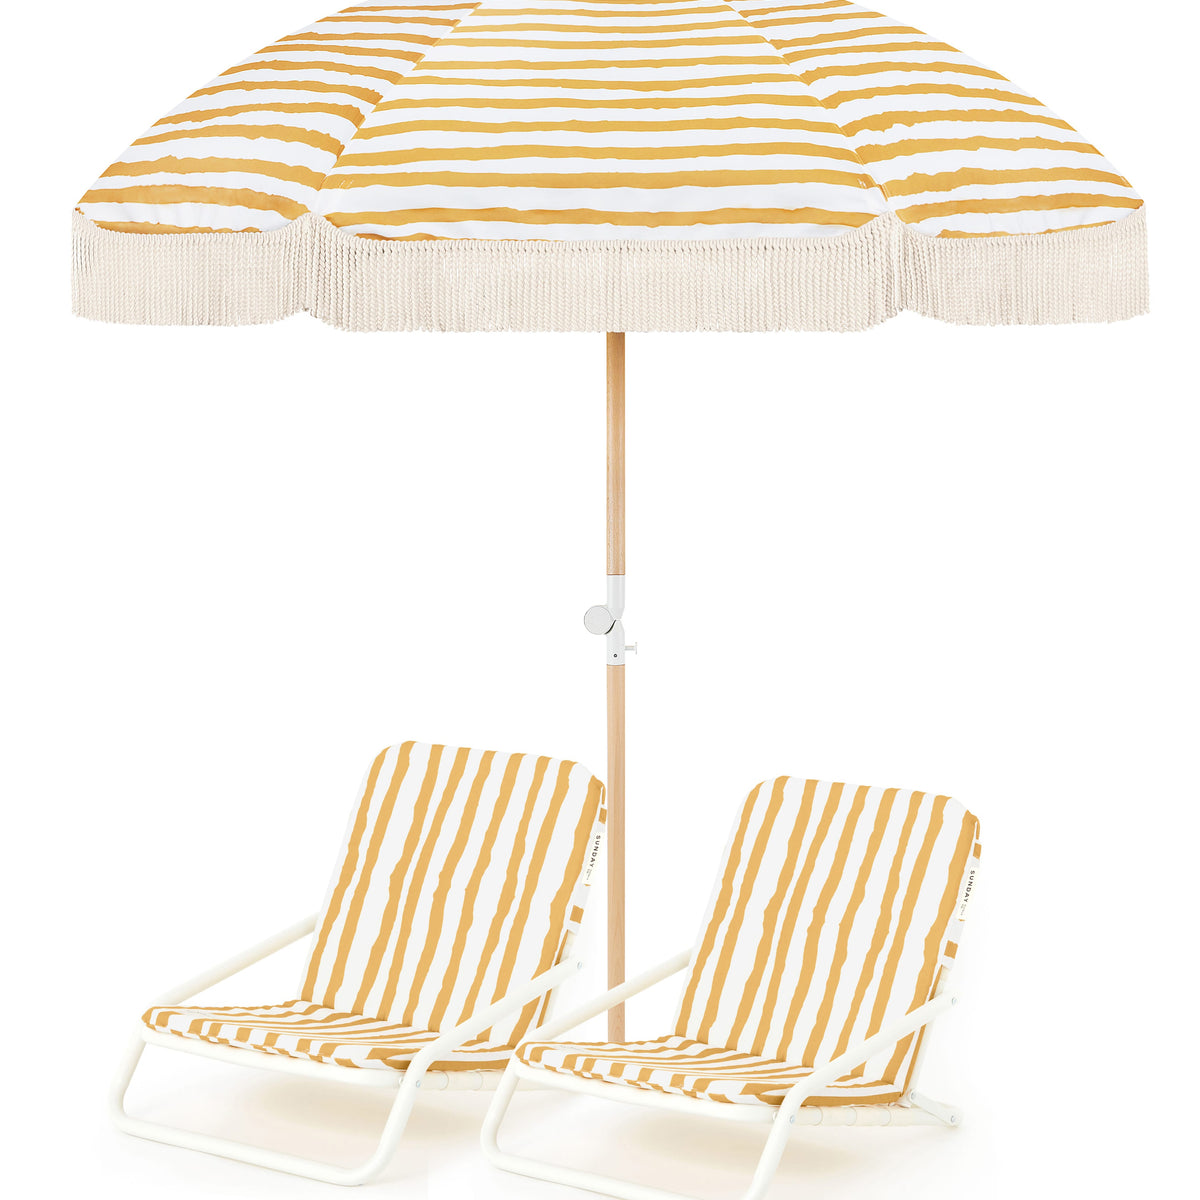 Sun Ray Beach Umbrella & Beach Chair Set